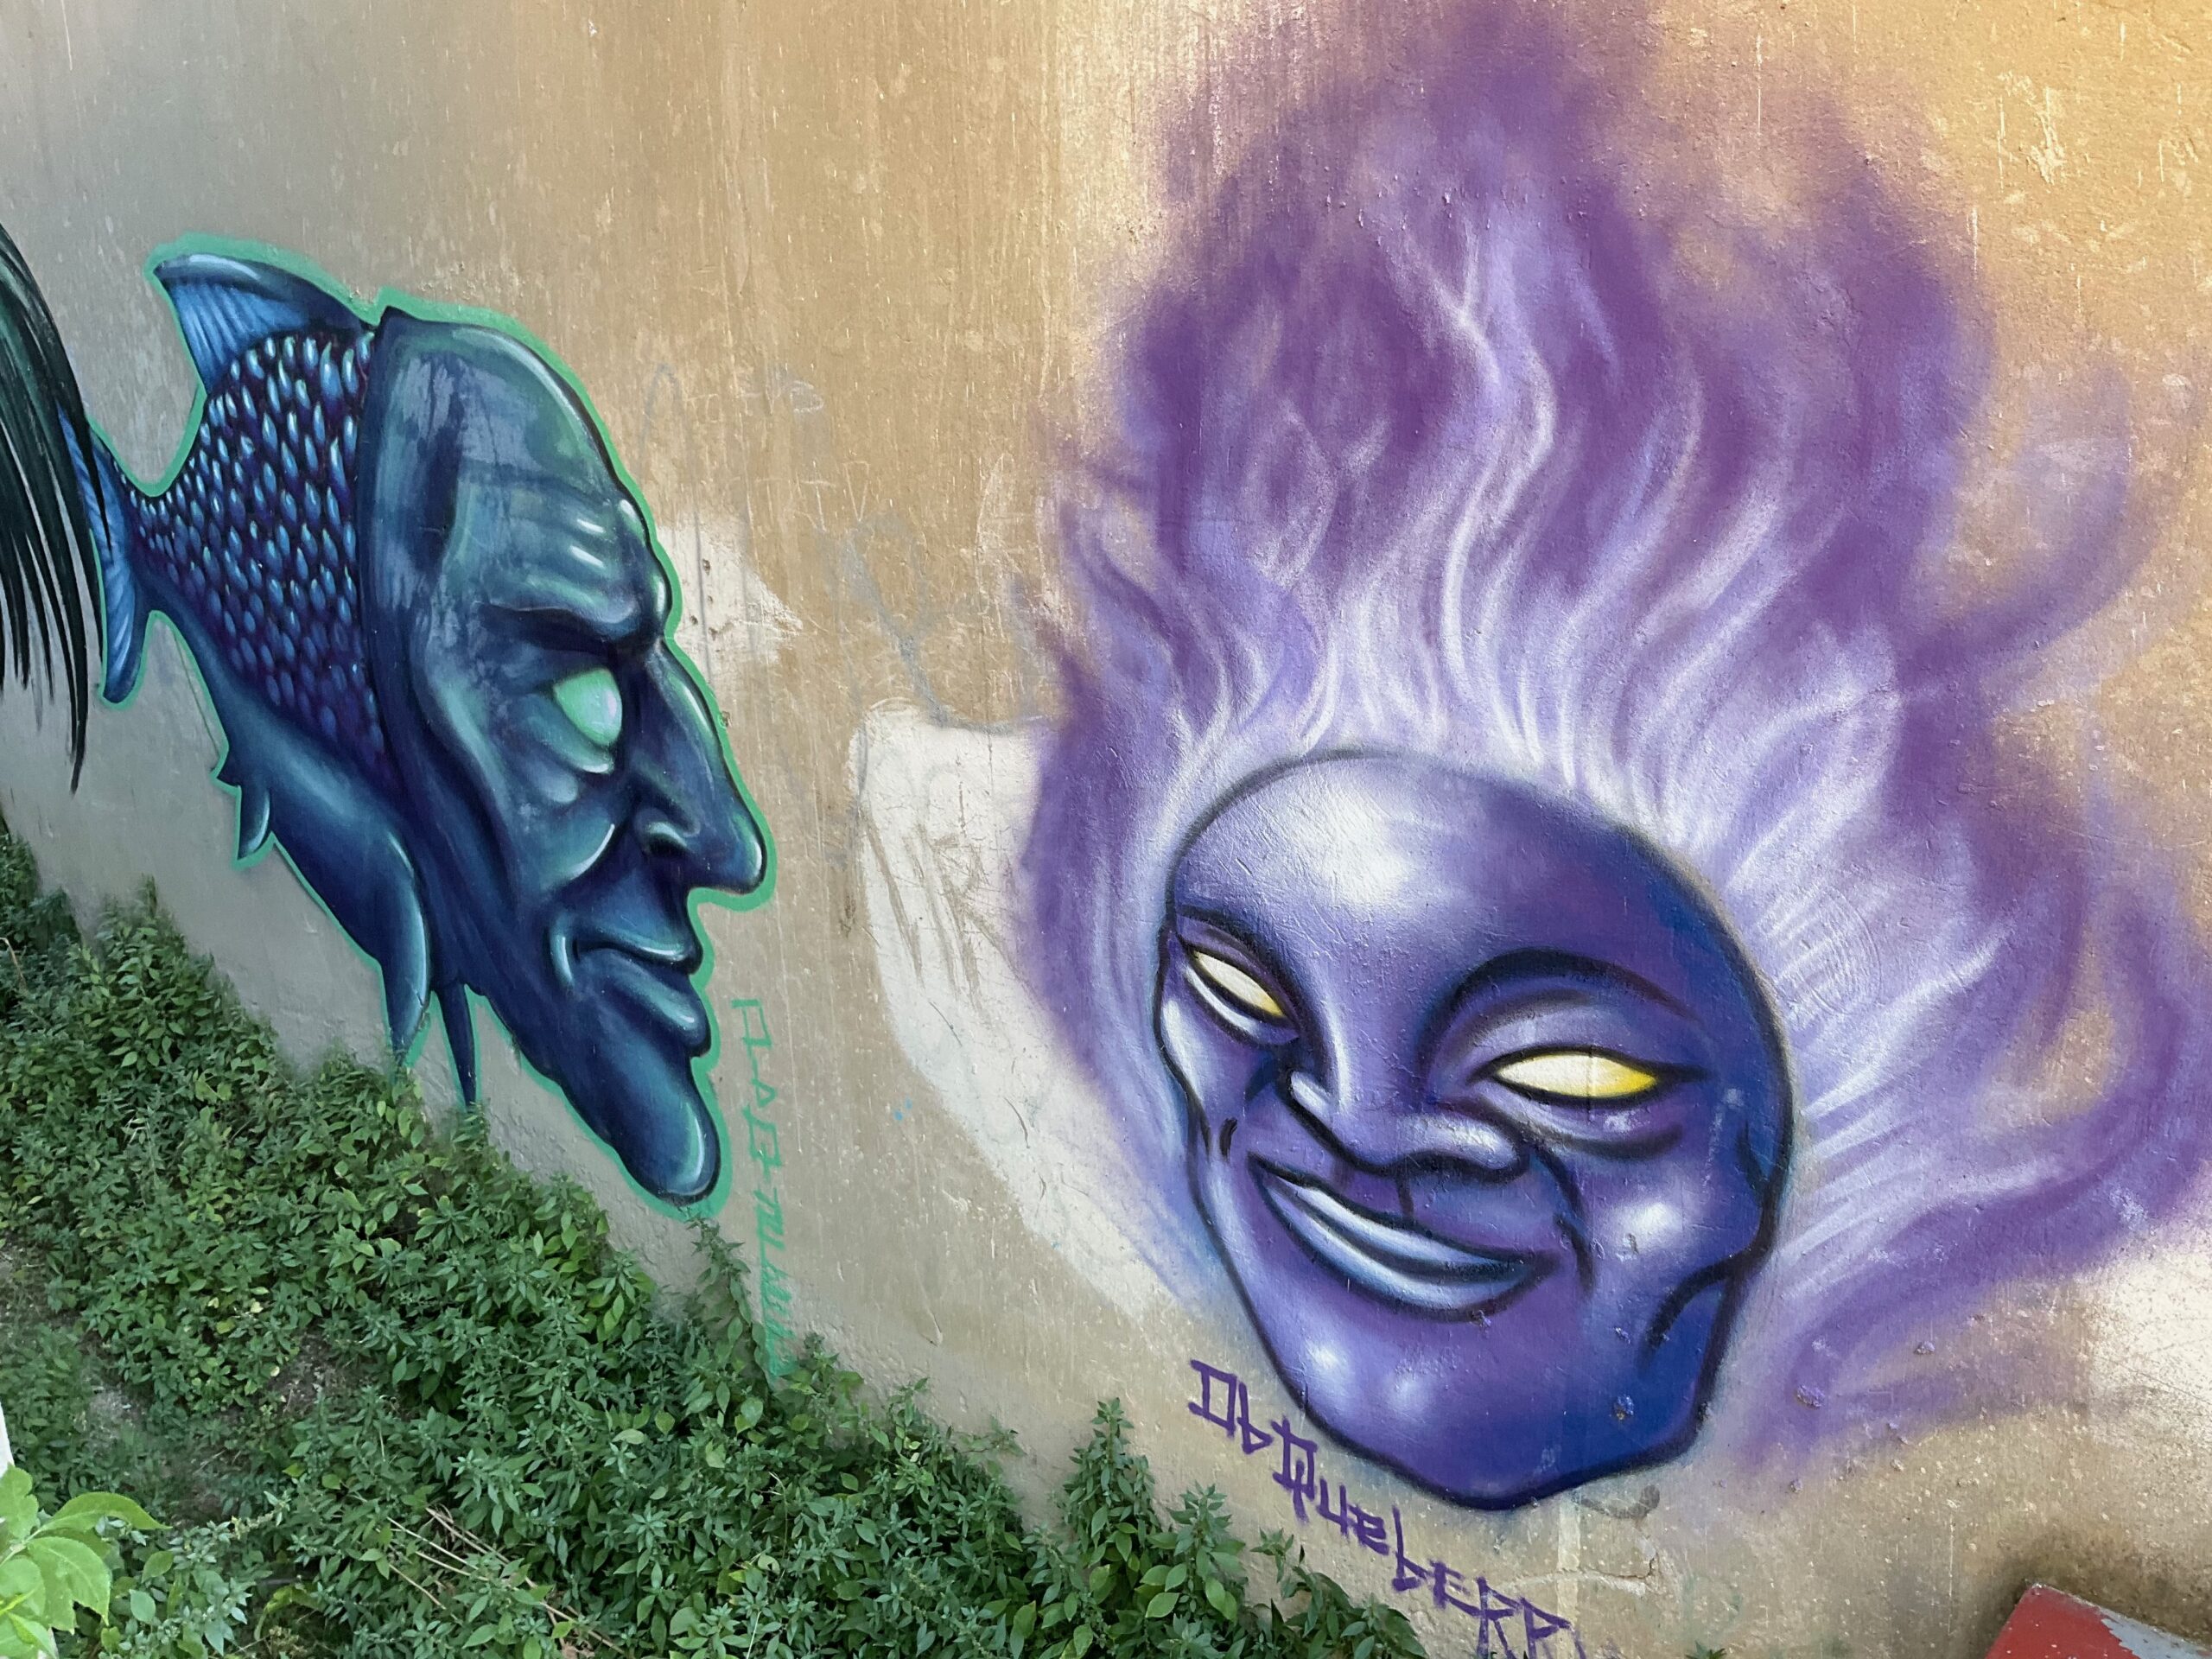 opere di street art raffiguranti un pesce con una testa umana e un volto femminile con capelli fiammeggianti realizzati su un muro